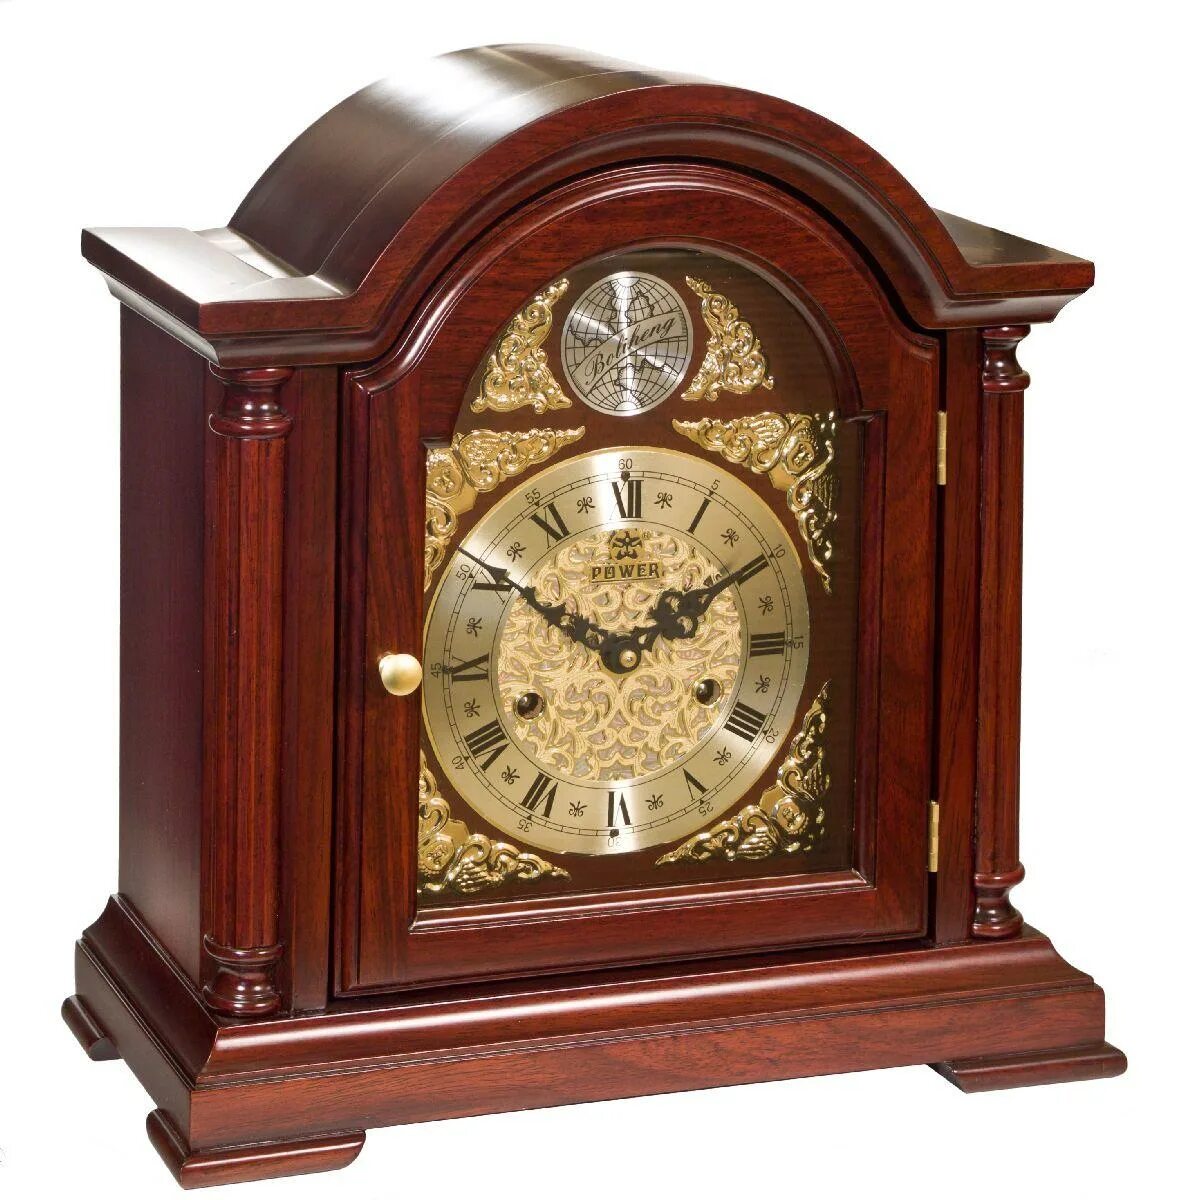 Часы каминные Vostok. Каминные часы т-9728-2 каминные/настольные часы с боем Восток. Механические ЧАСЫЧАСЫ. Магазин часов во владимире